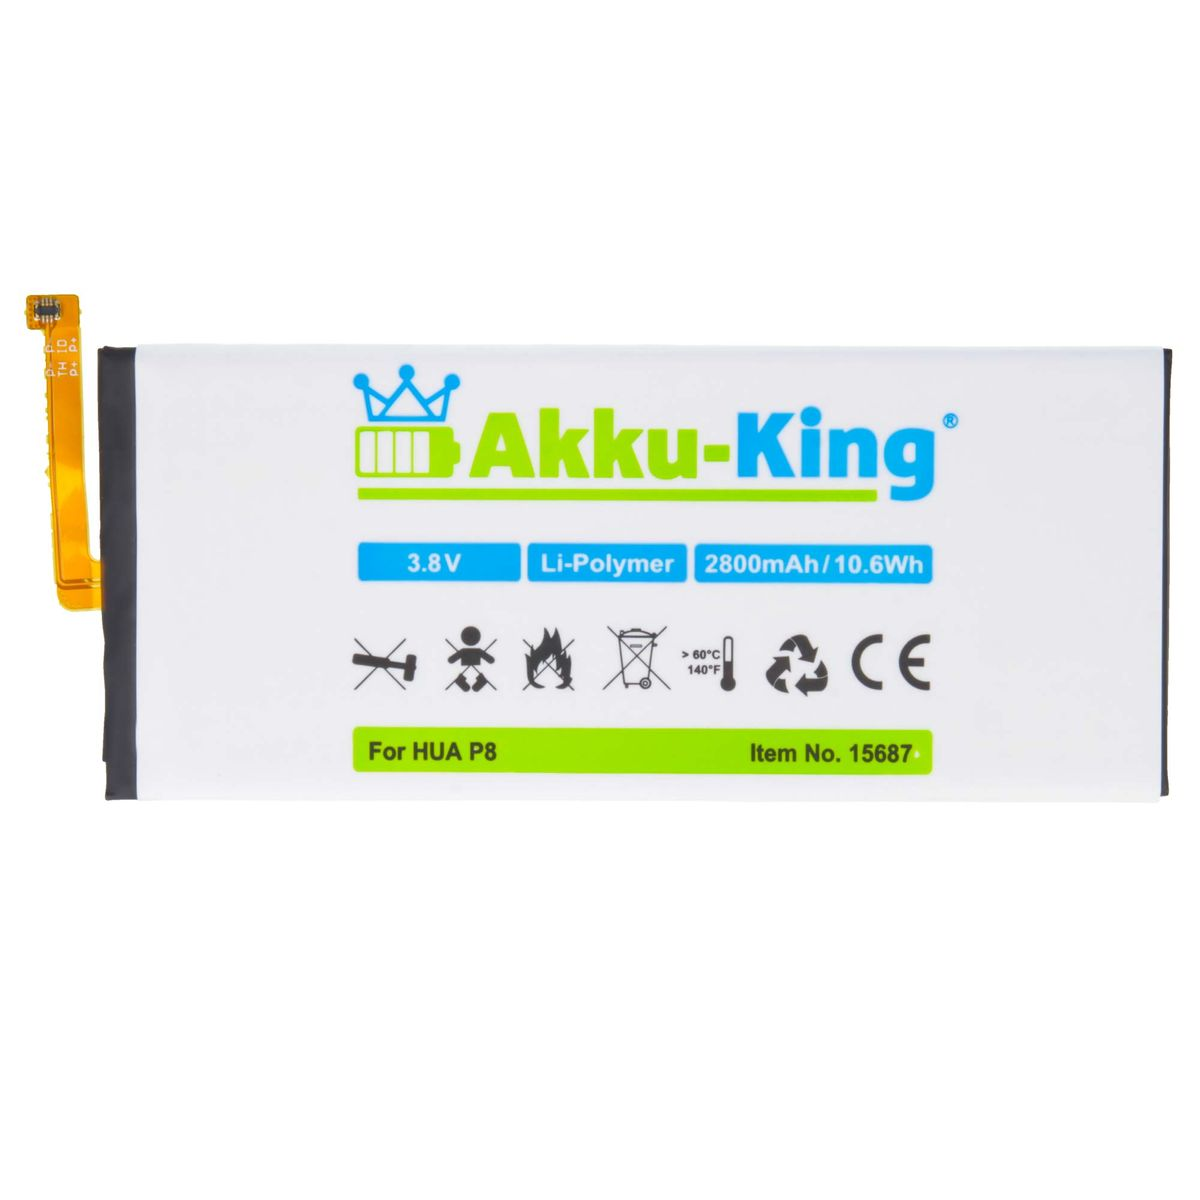 Li-Polymer Akku Handy-Akku, 3.8 2800mAh Huawei Volt, HB3447A9EBW mit kompatibel AKKU-KING